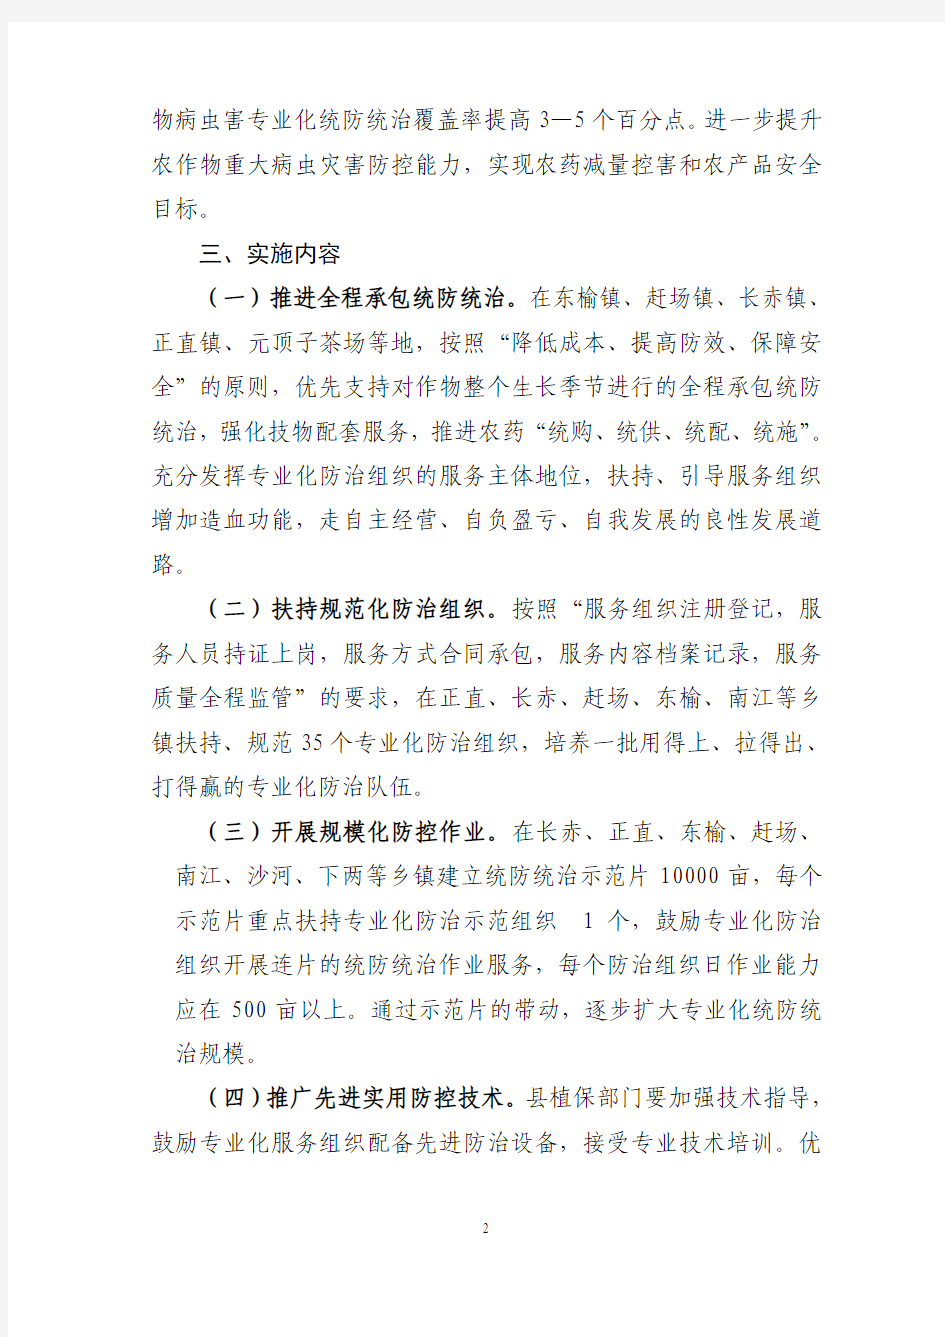 南江县2010年农作物病虫害专业化统防统治示范工作实施方案